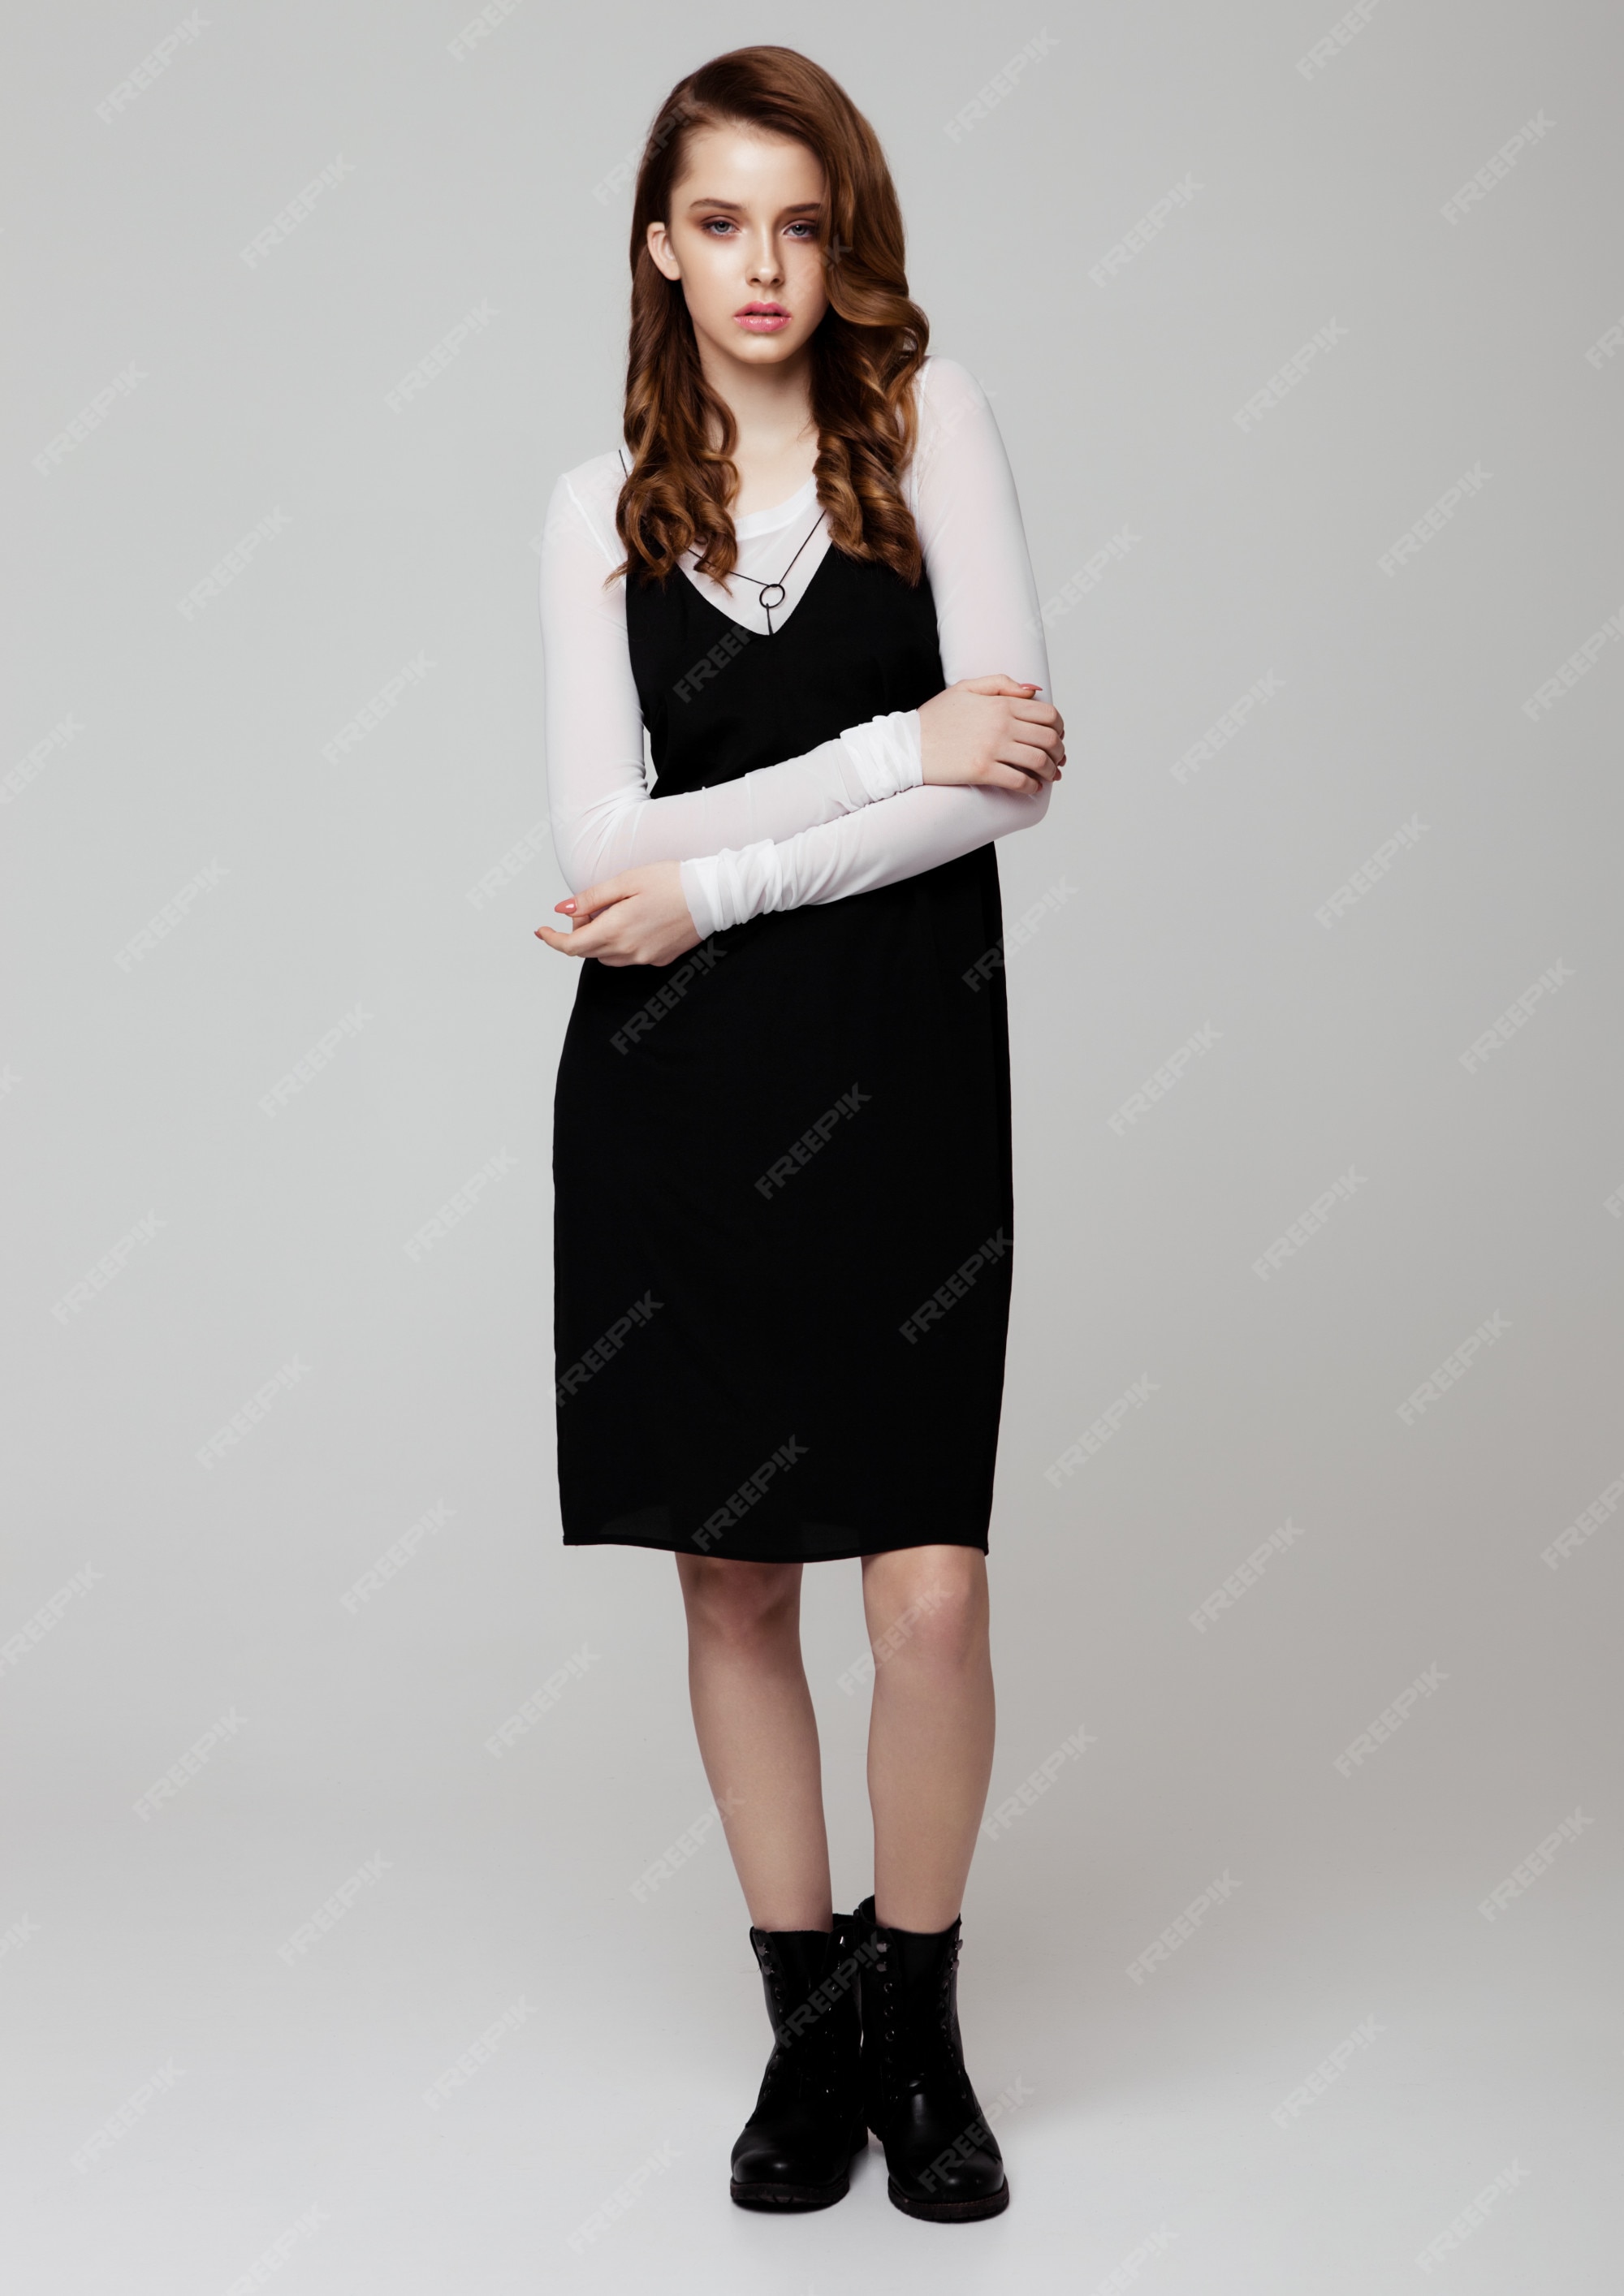 moda joven y bella con un vestido negro con camisa blanca sobre | Foto Premium